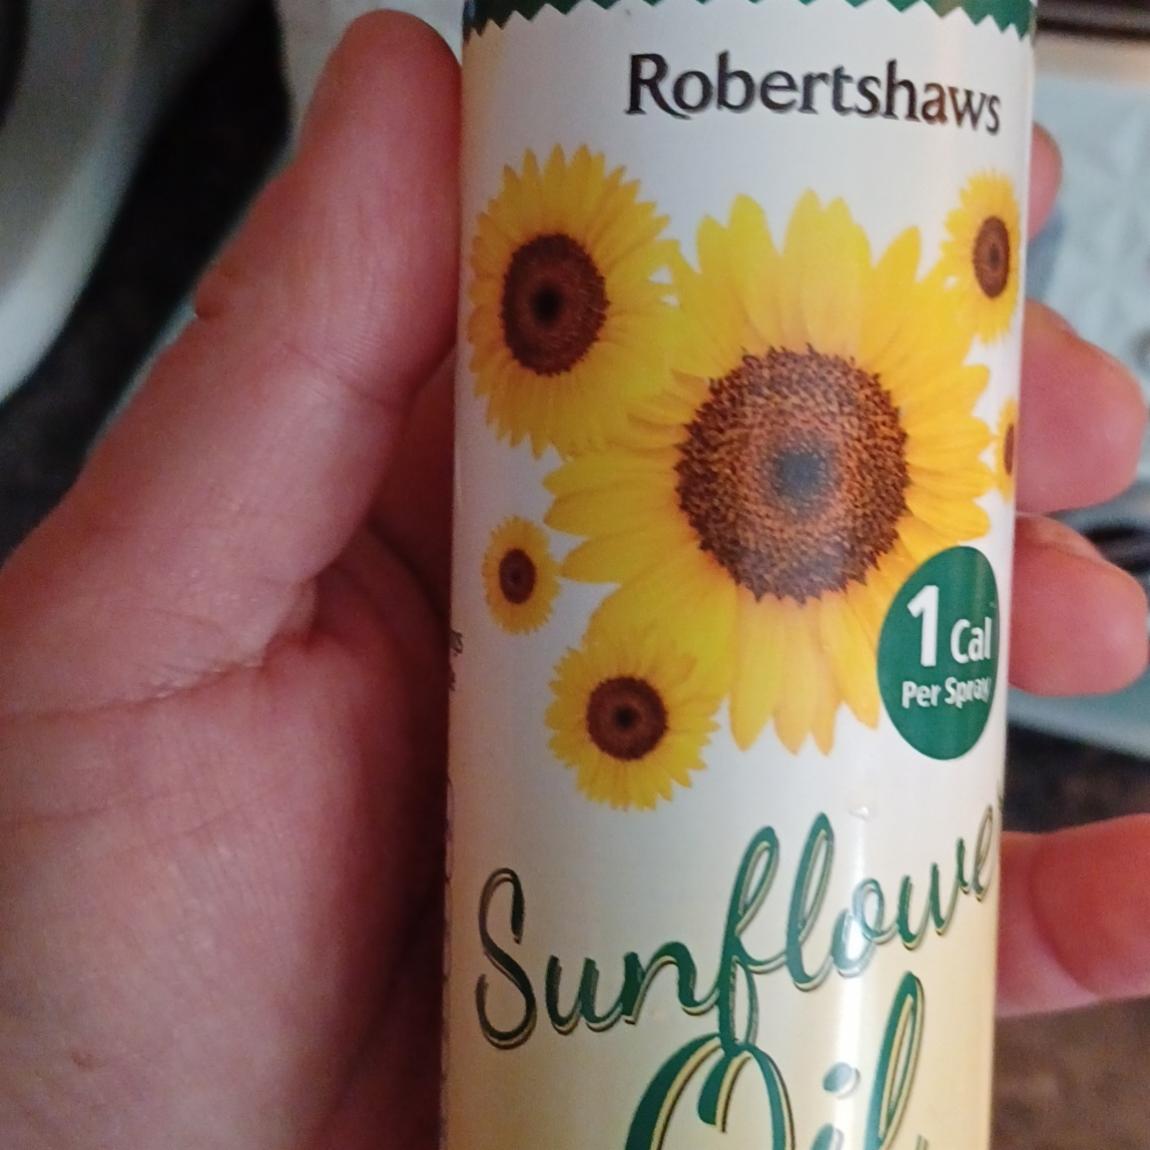 Fotografie - Sunflower oil Robertshaws